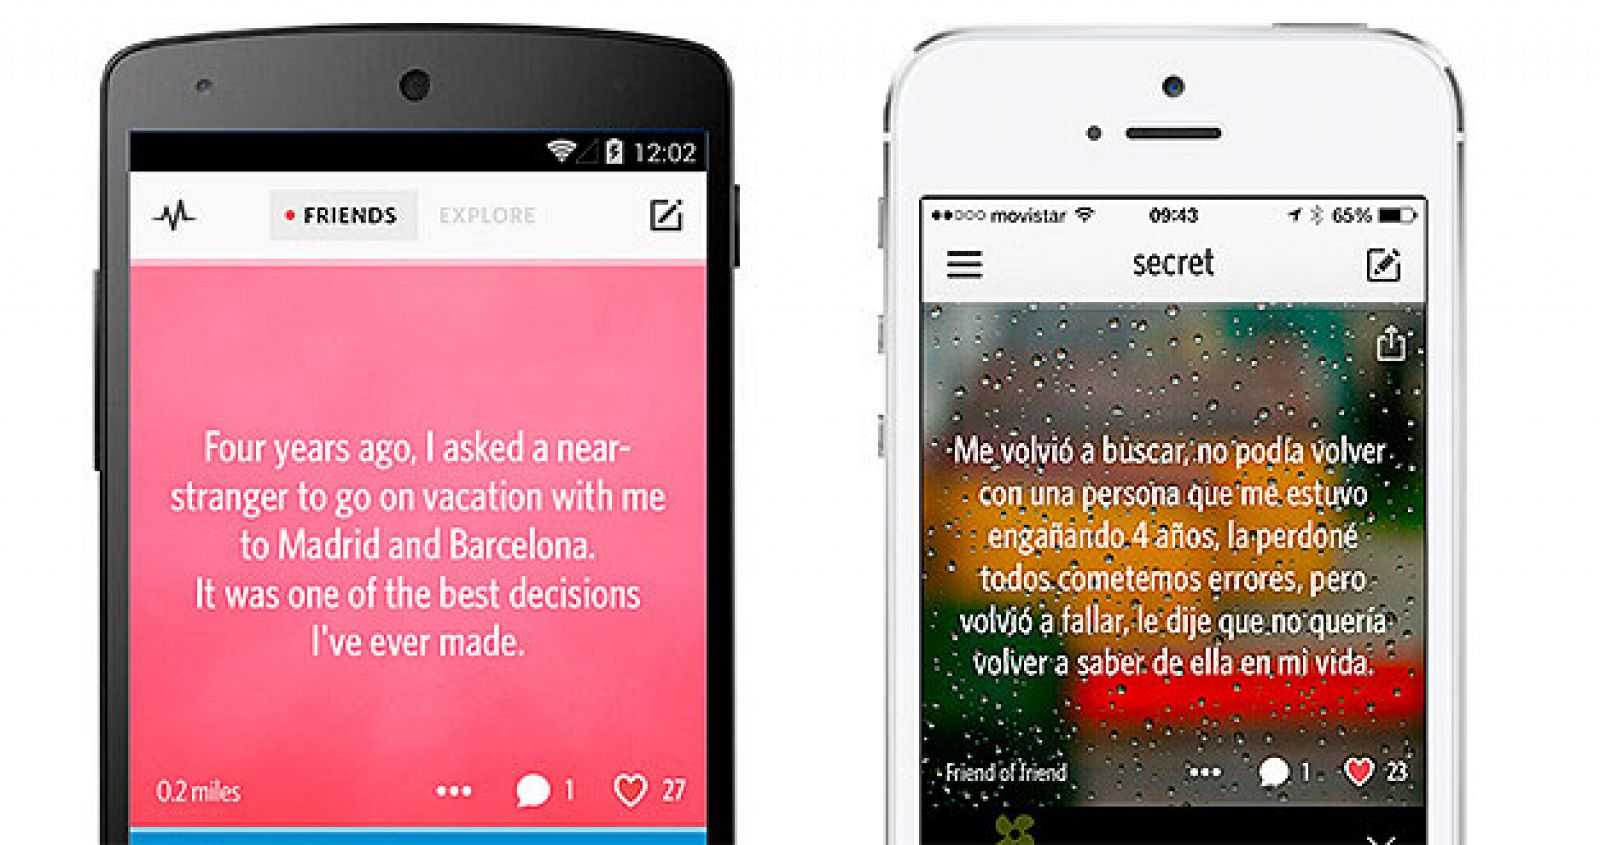 La aplicación Secret permite lanzar rumores y cotilleos entre conocidos